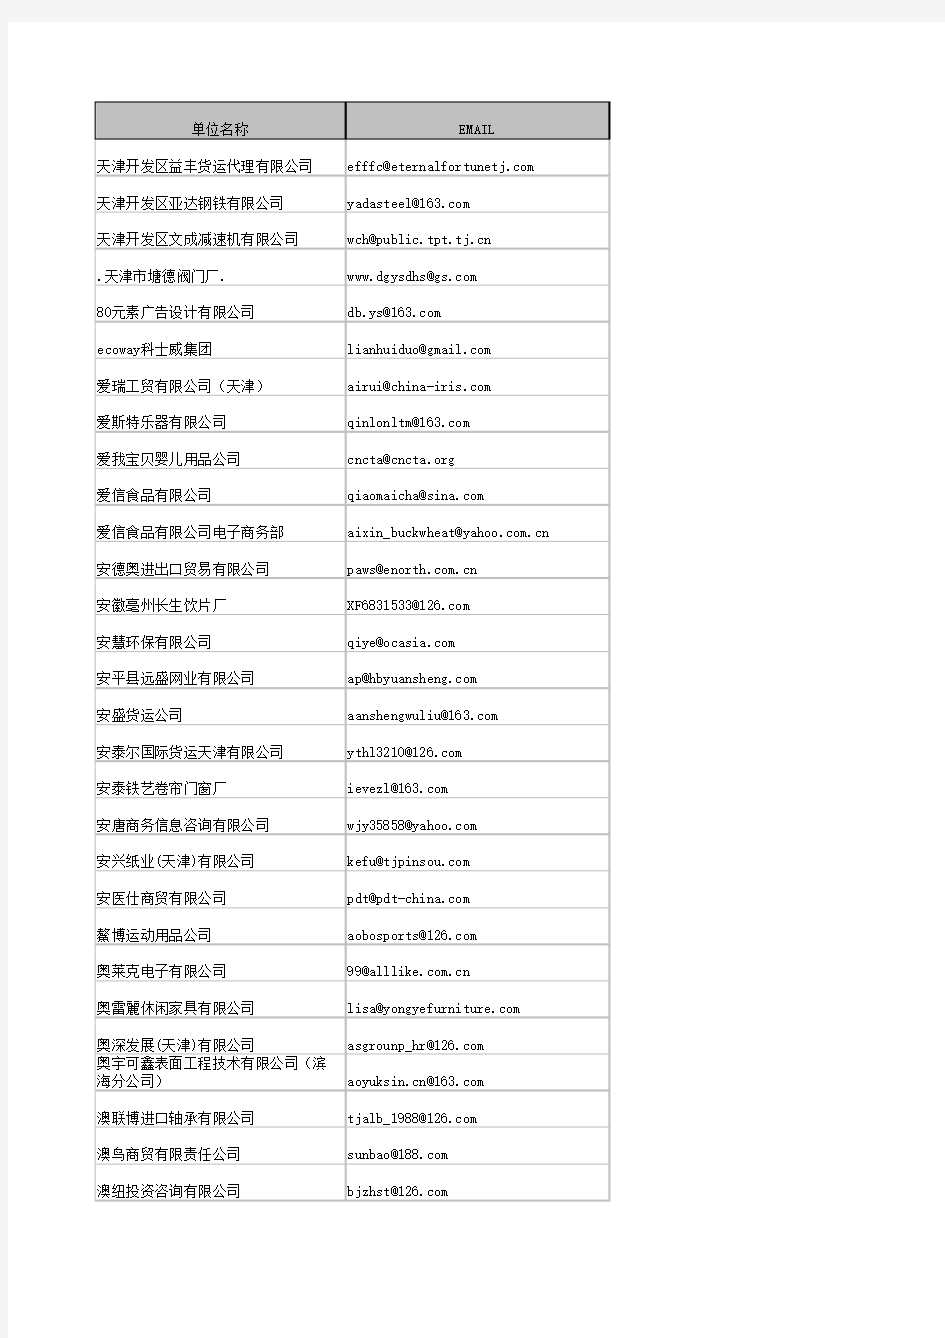 天津市企业电子邮箱名录(2011版)